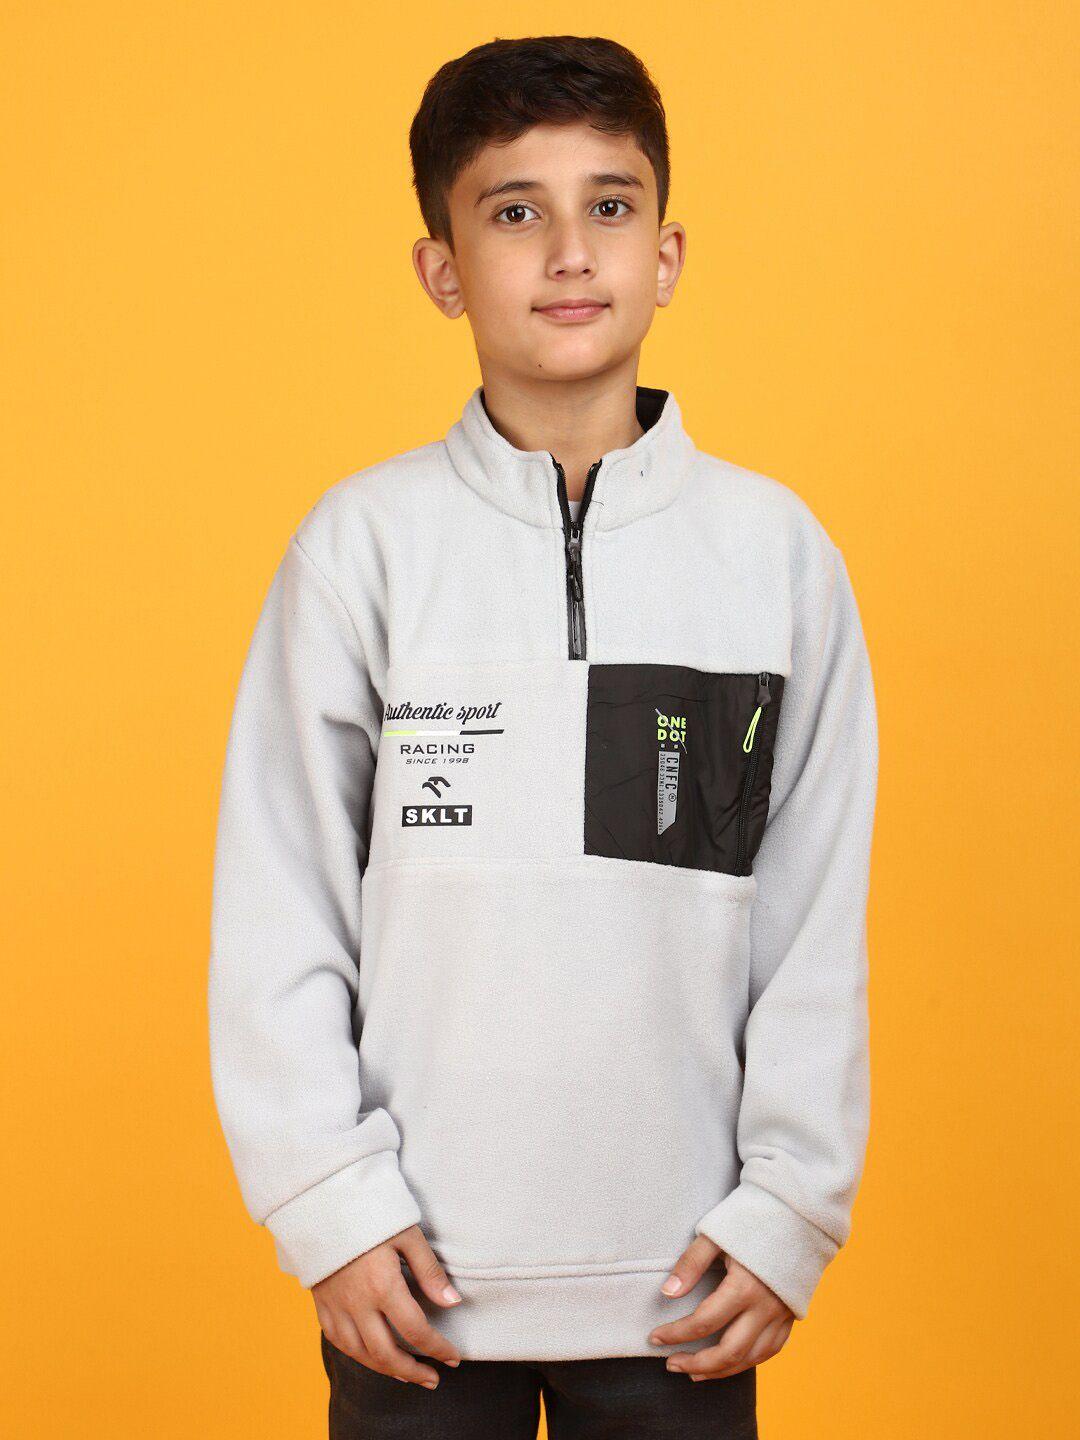 v-mart boys typography printed acrylic sweatshirt